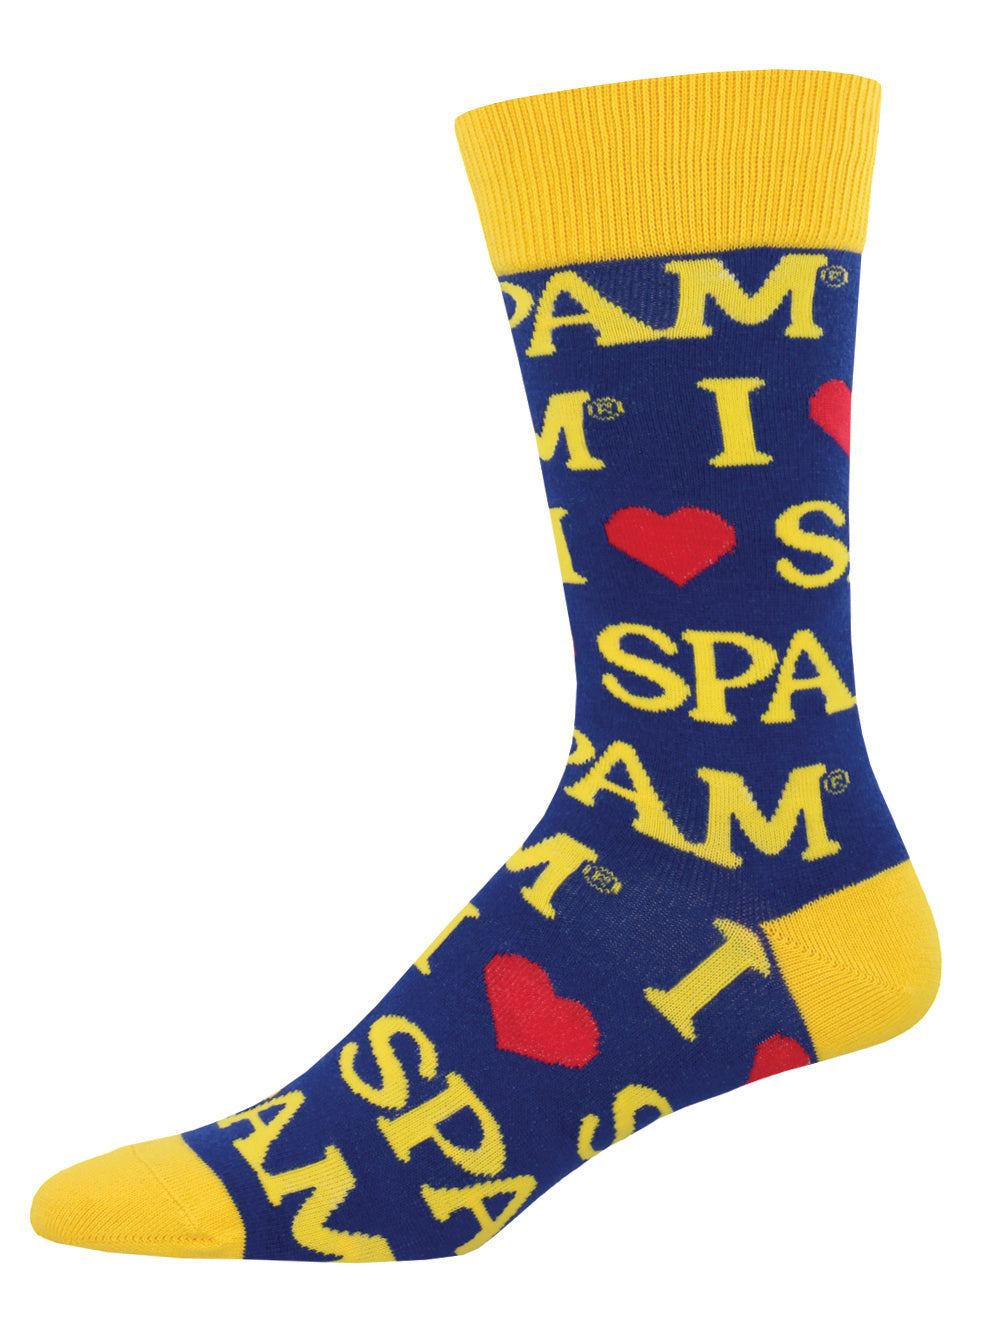 Spam Socks